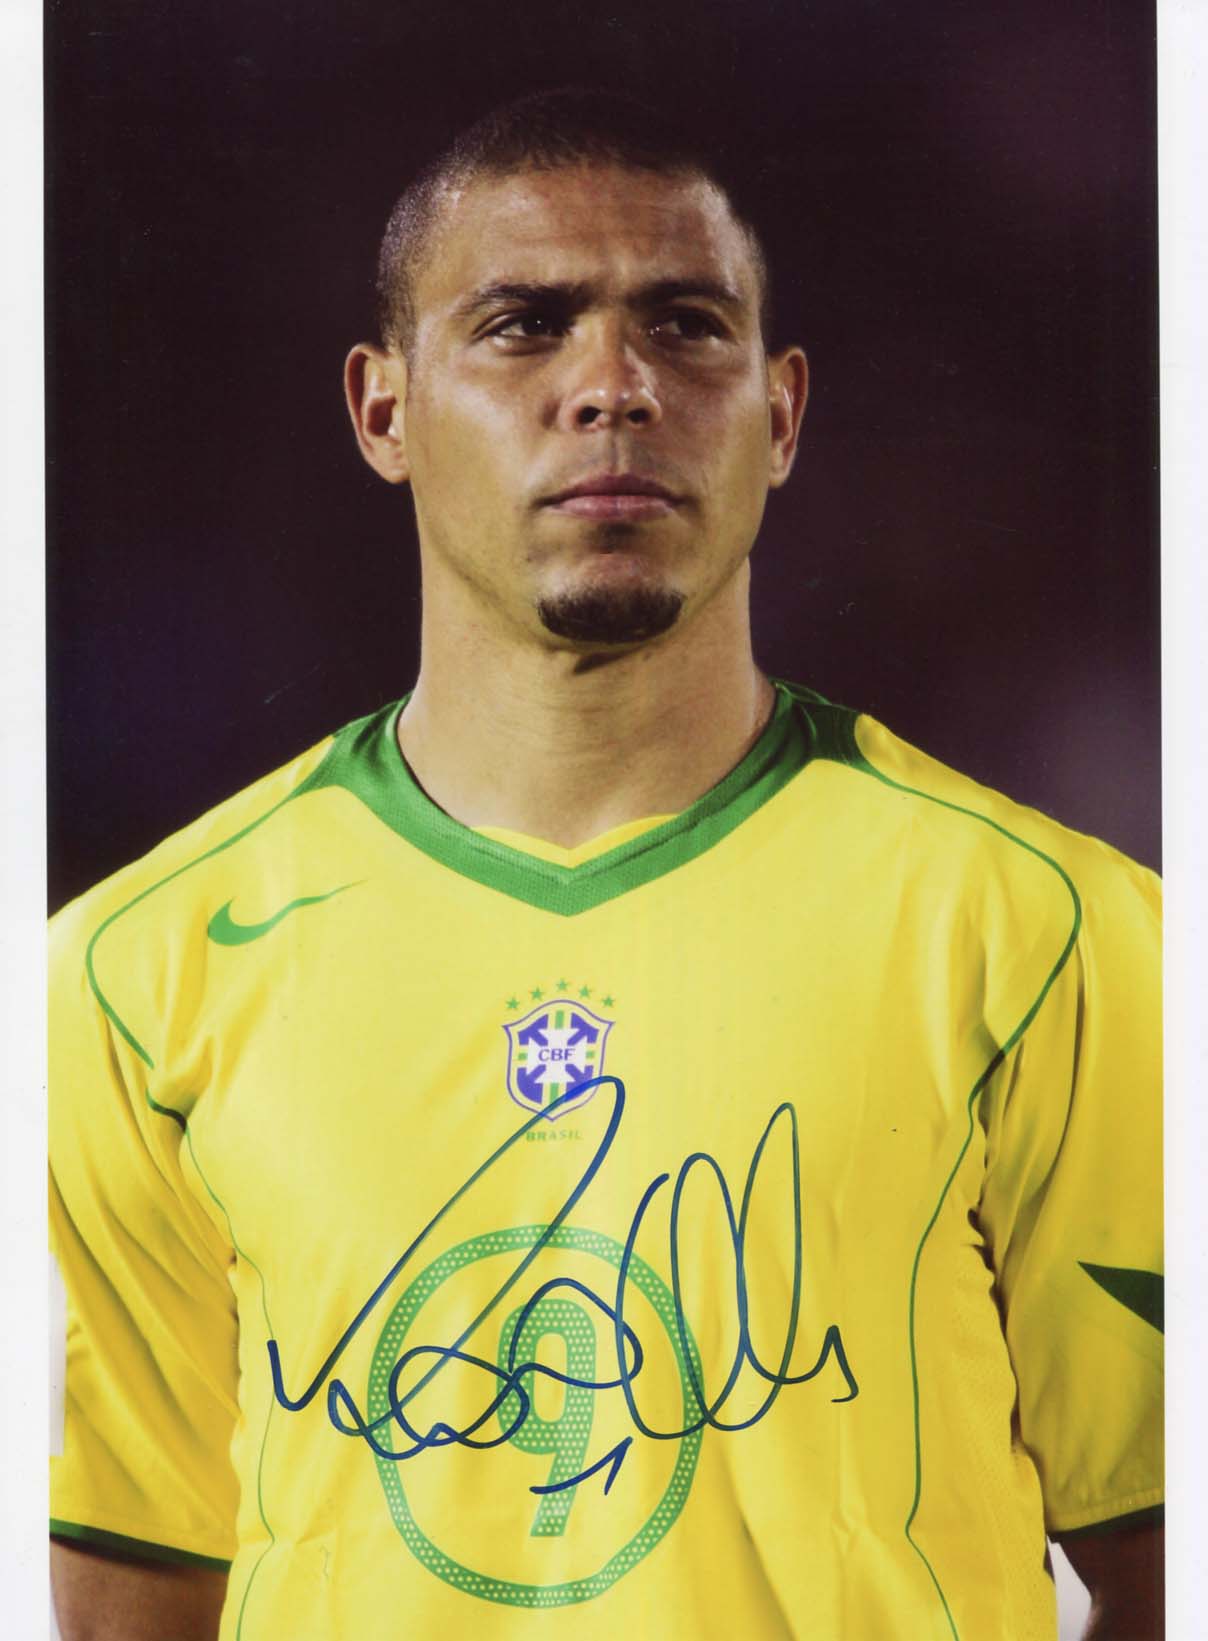 Ronaldo Autograph  signed photographs